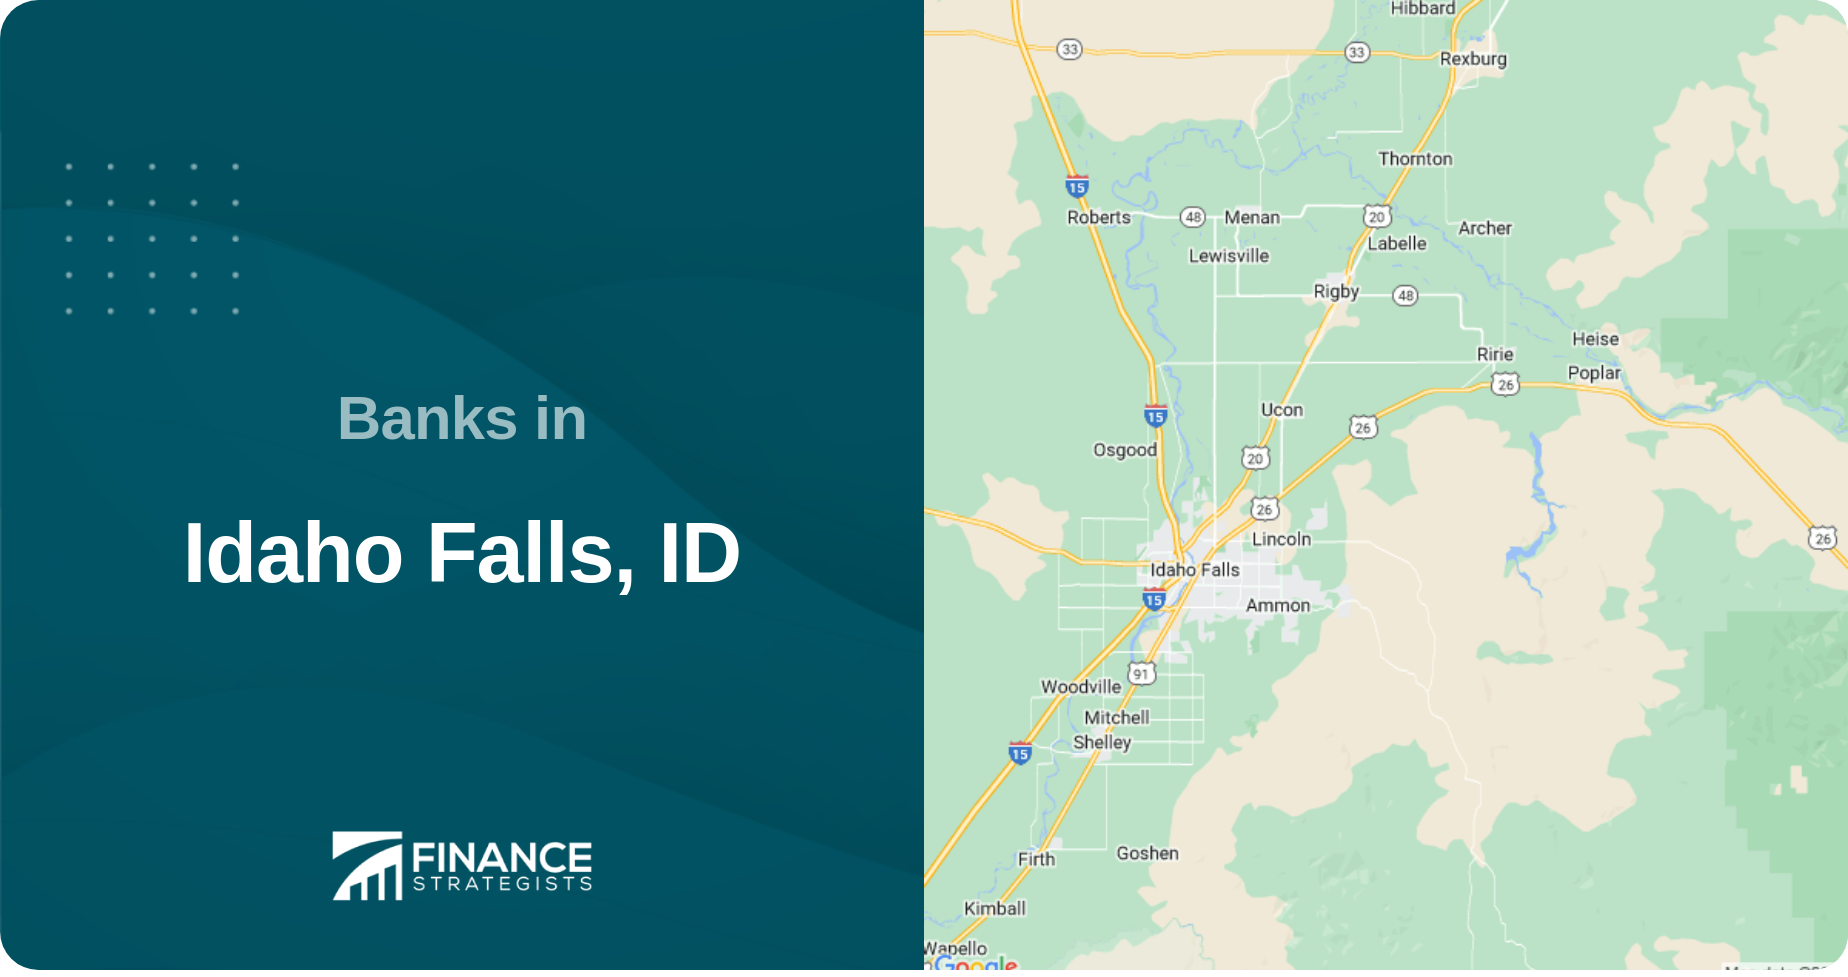 Banks in Idaho Falls, ID